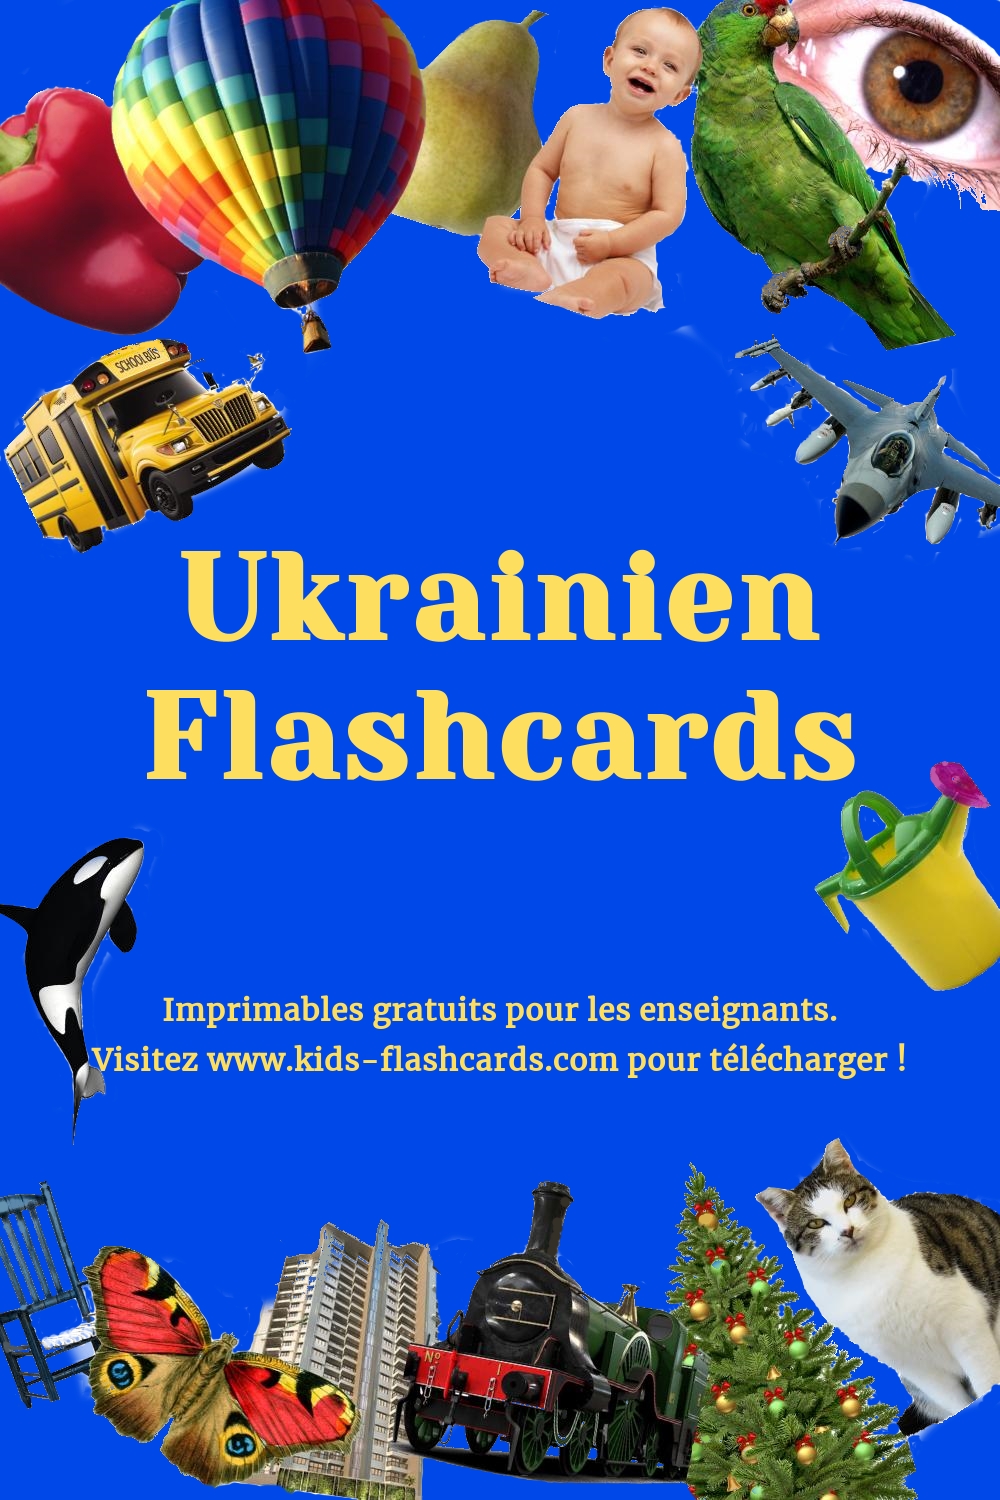 Imprimables gratuits en Ukrainien